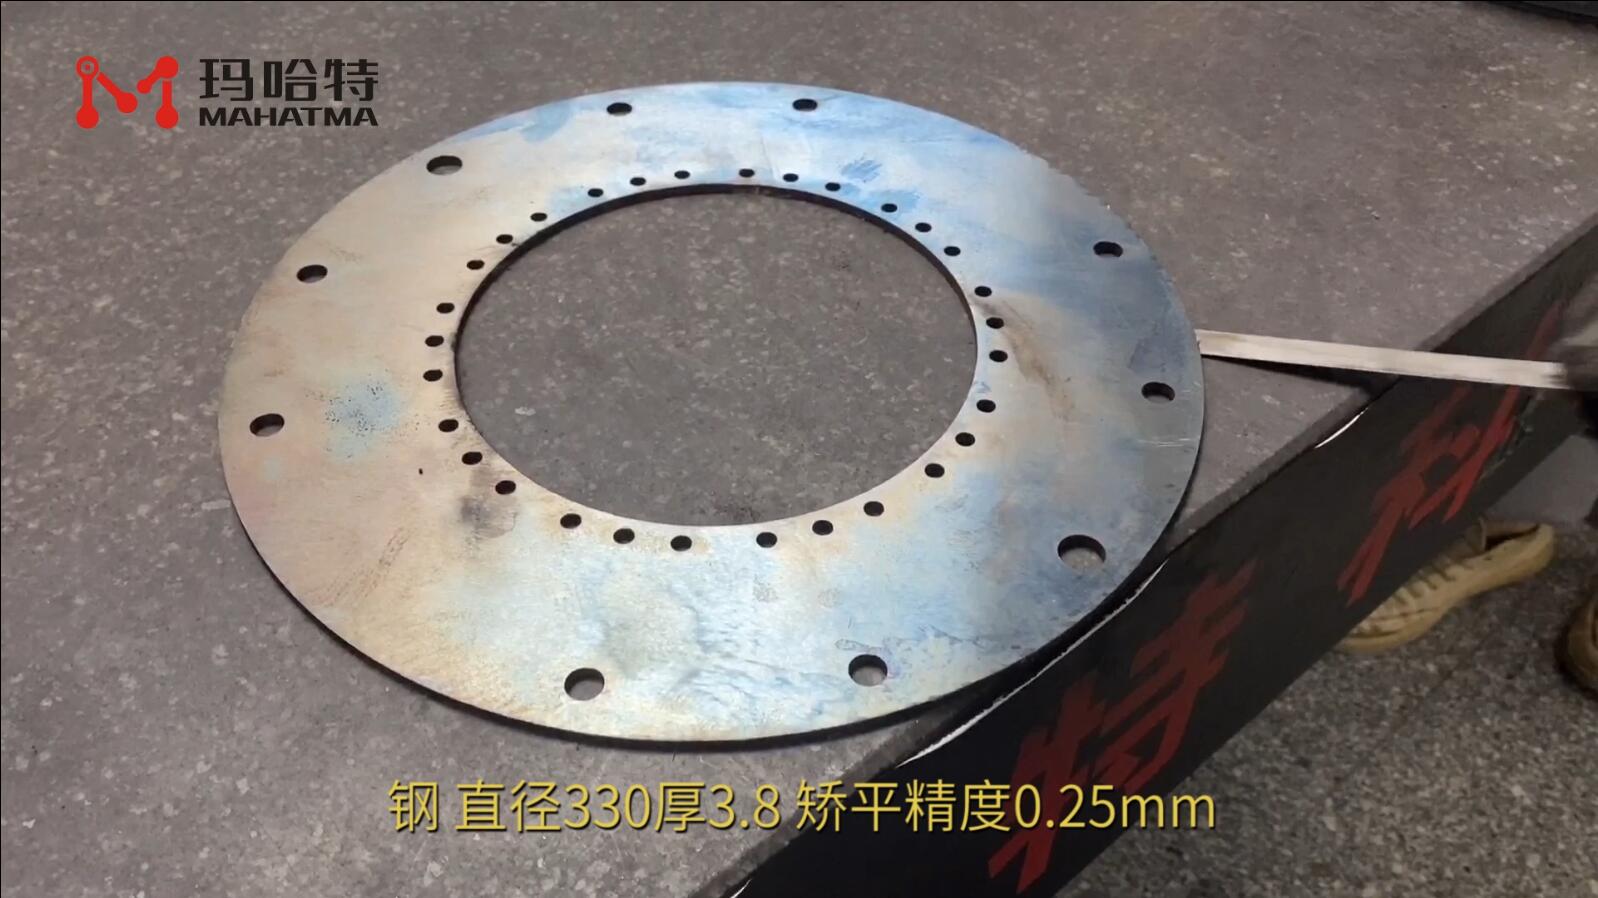 钢 MHT80-800 圆形 直径330厚3.8 矫平精度0.25mm